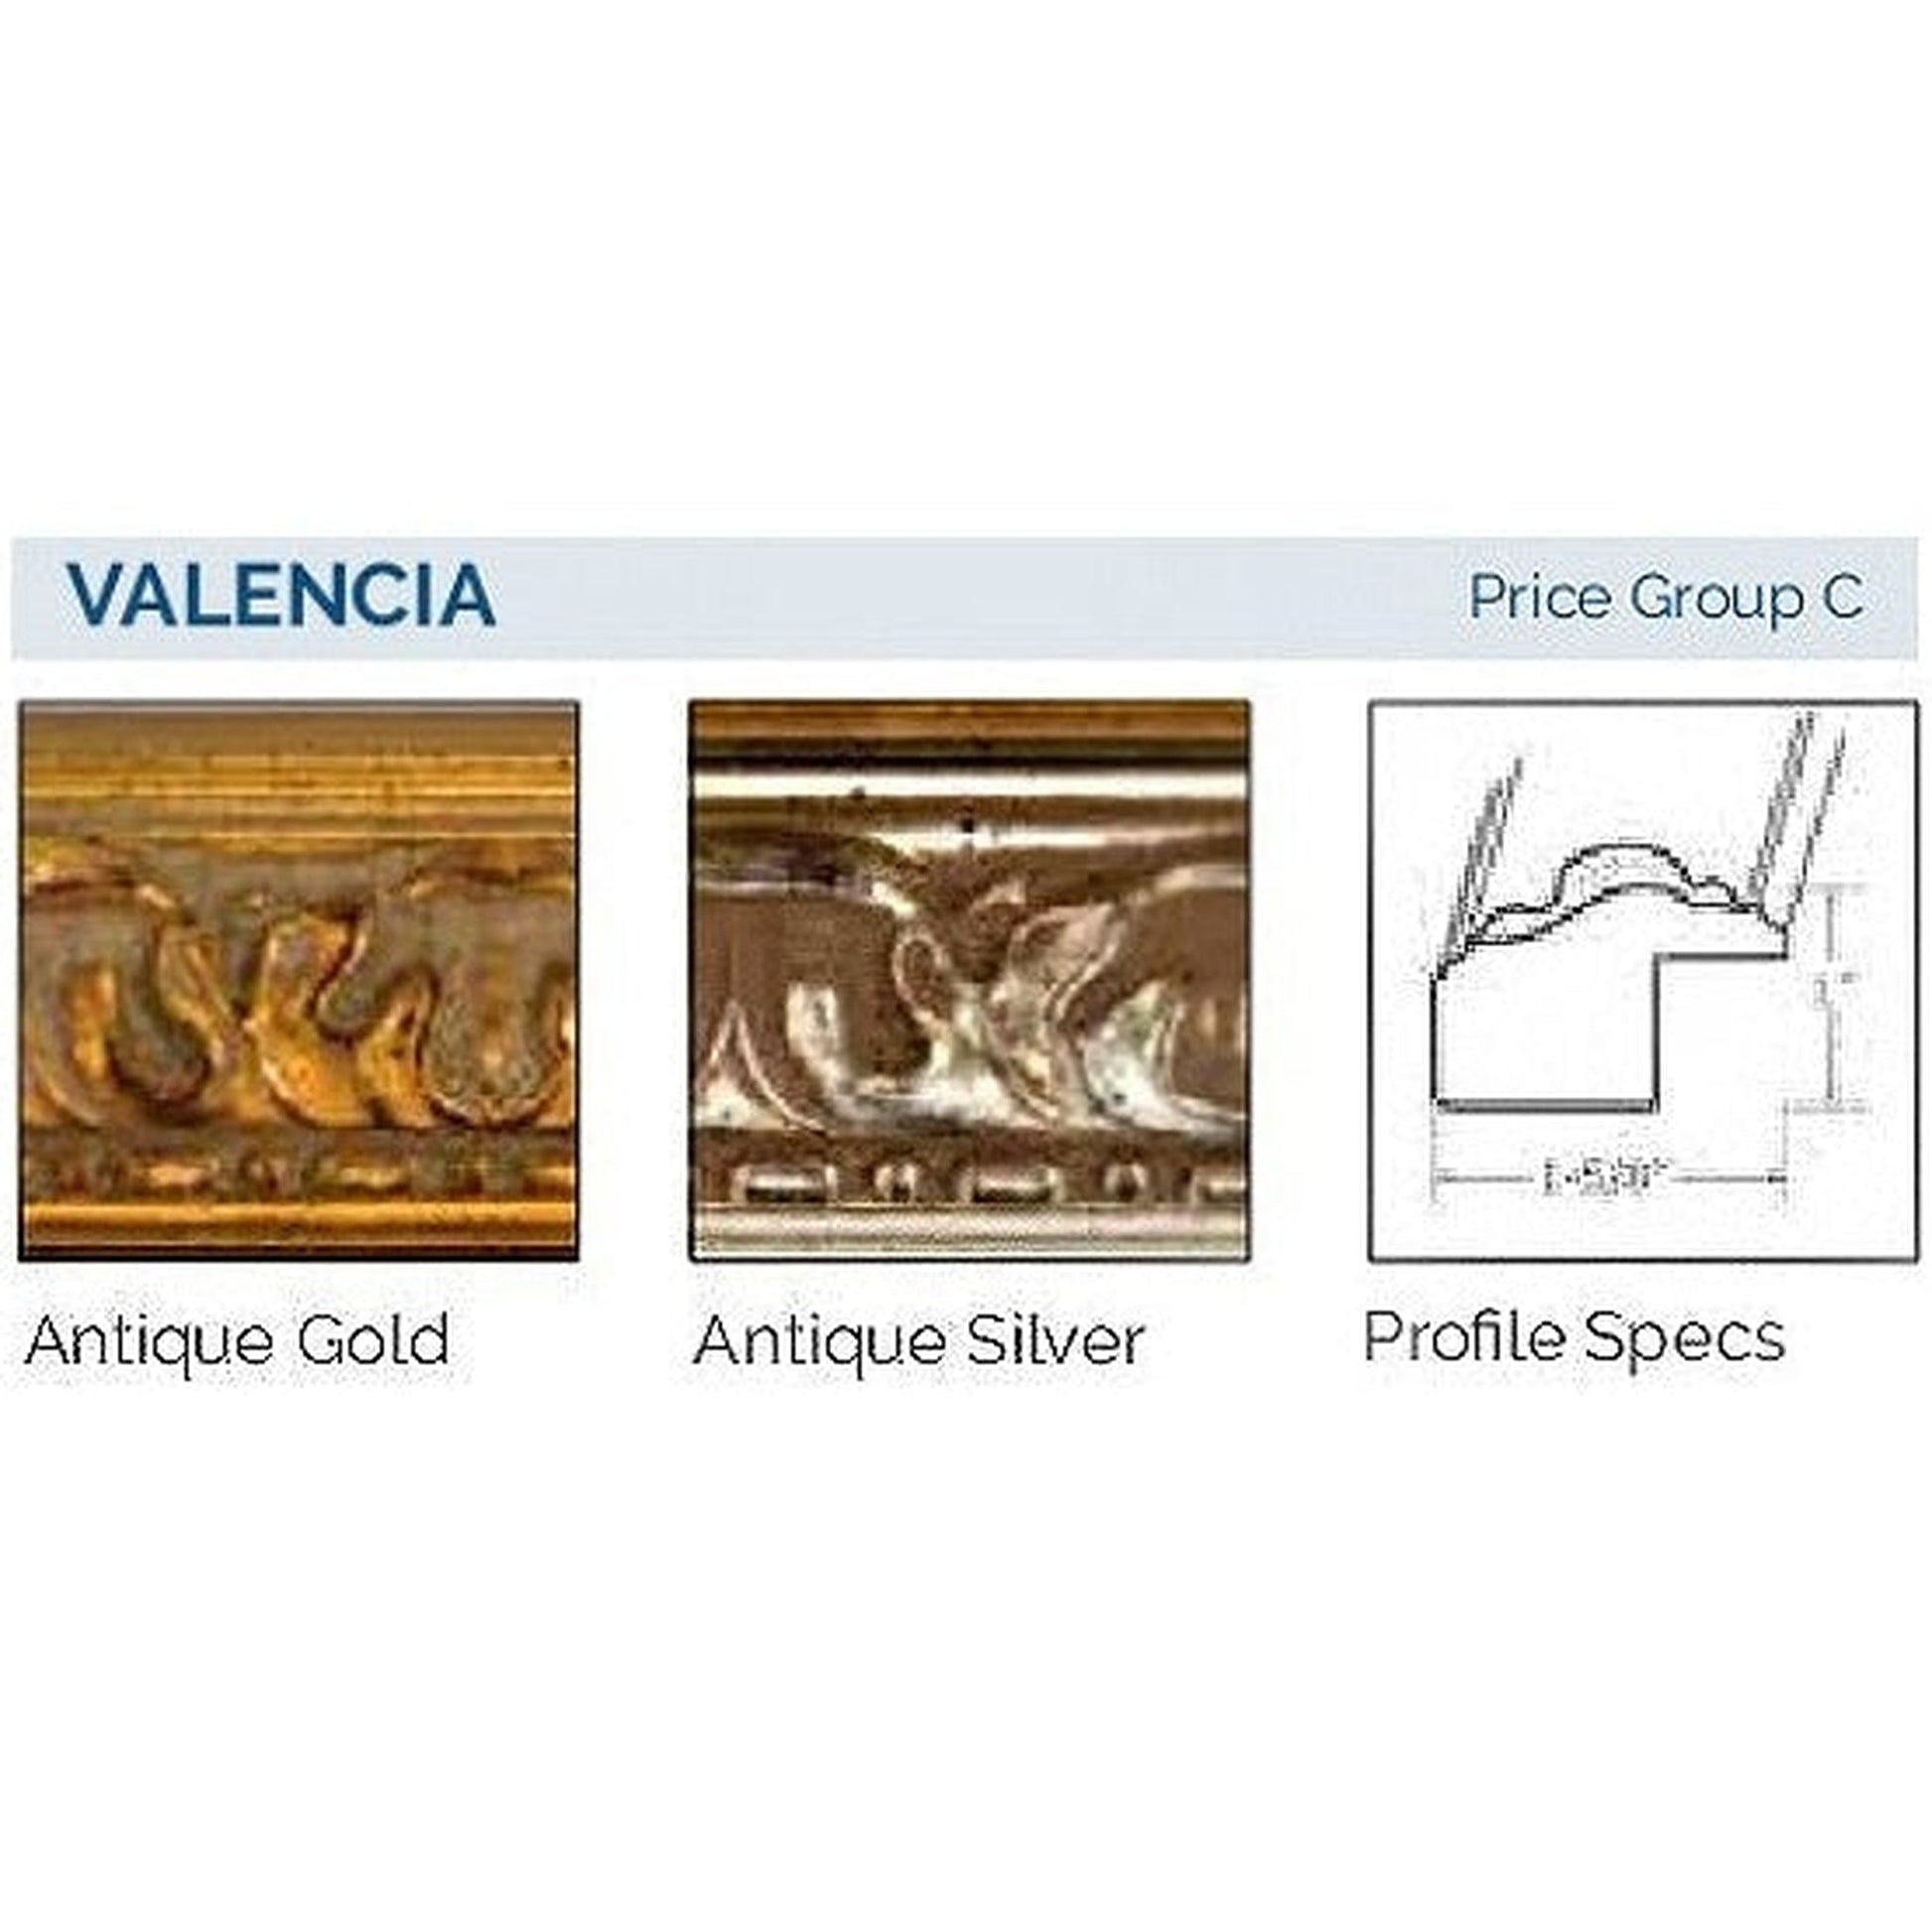 Afina Signature 38" x 30" Valencia Antique Gold Recessed Triple Door Medicine Cabinet With Beveled Edge Mirror